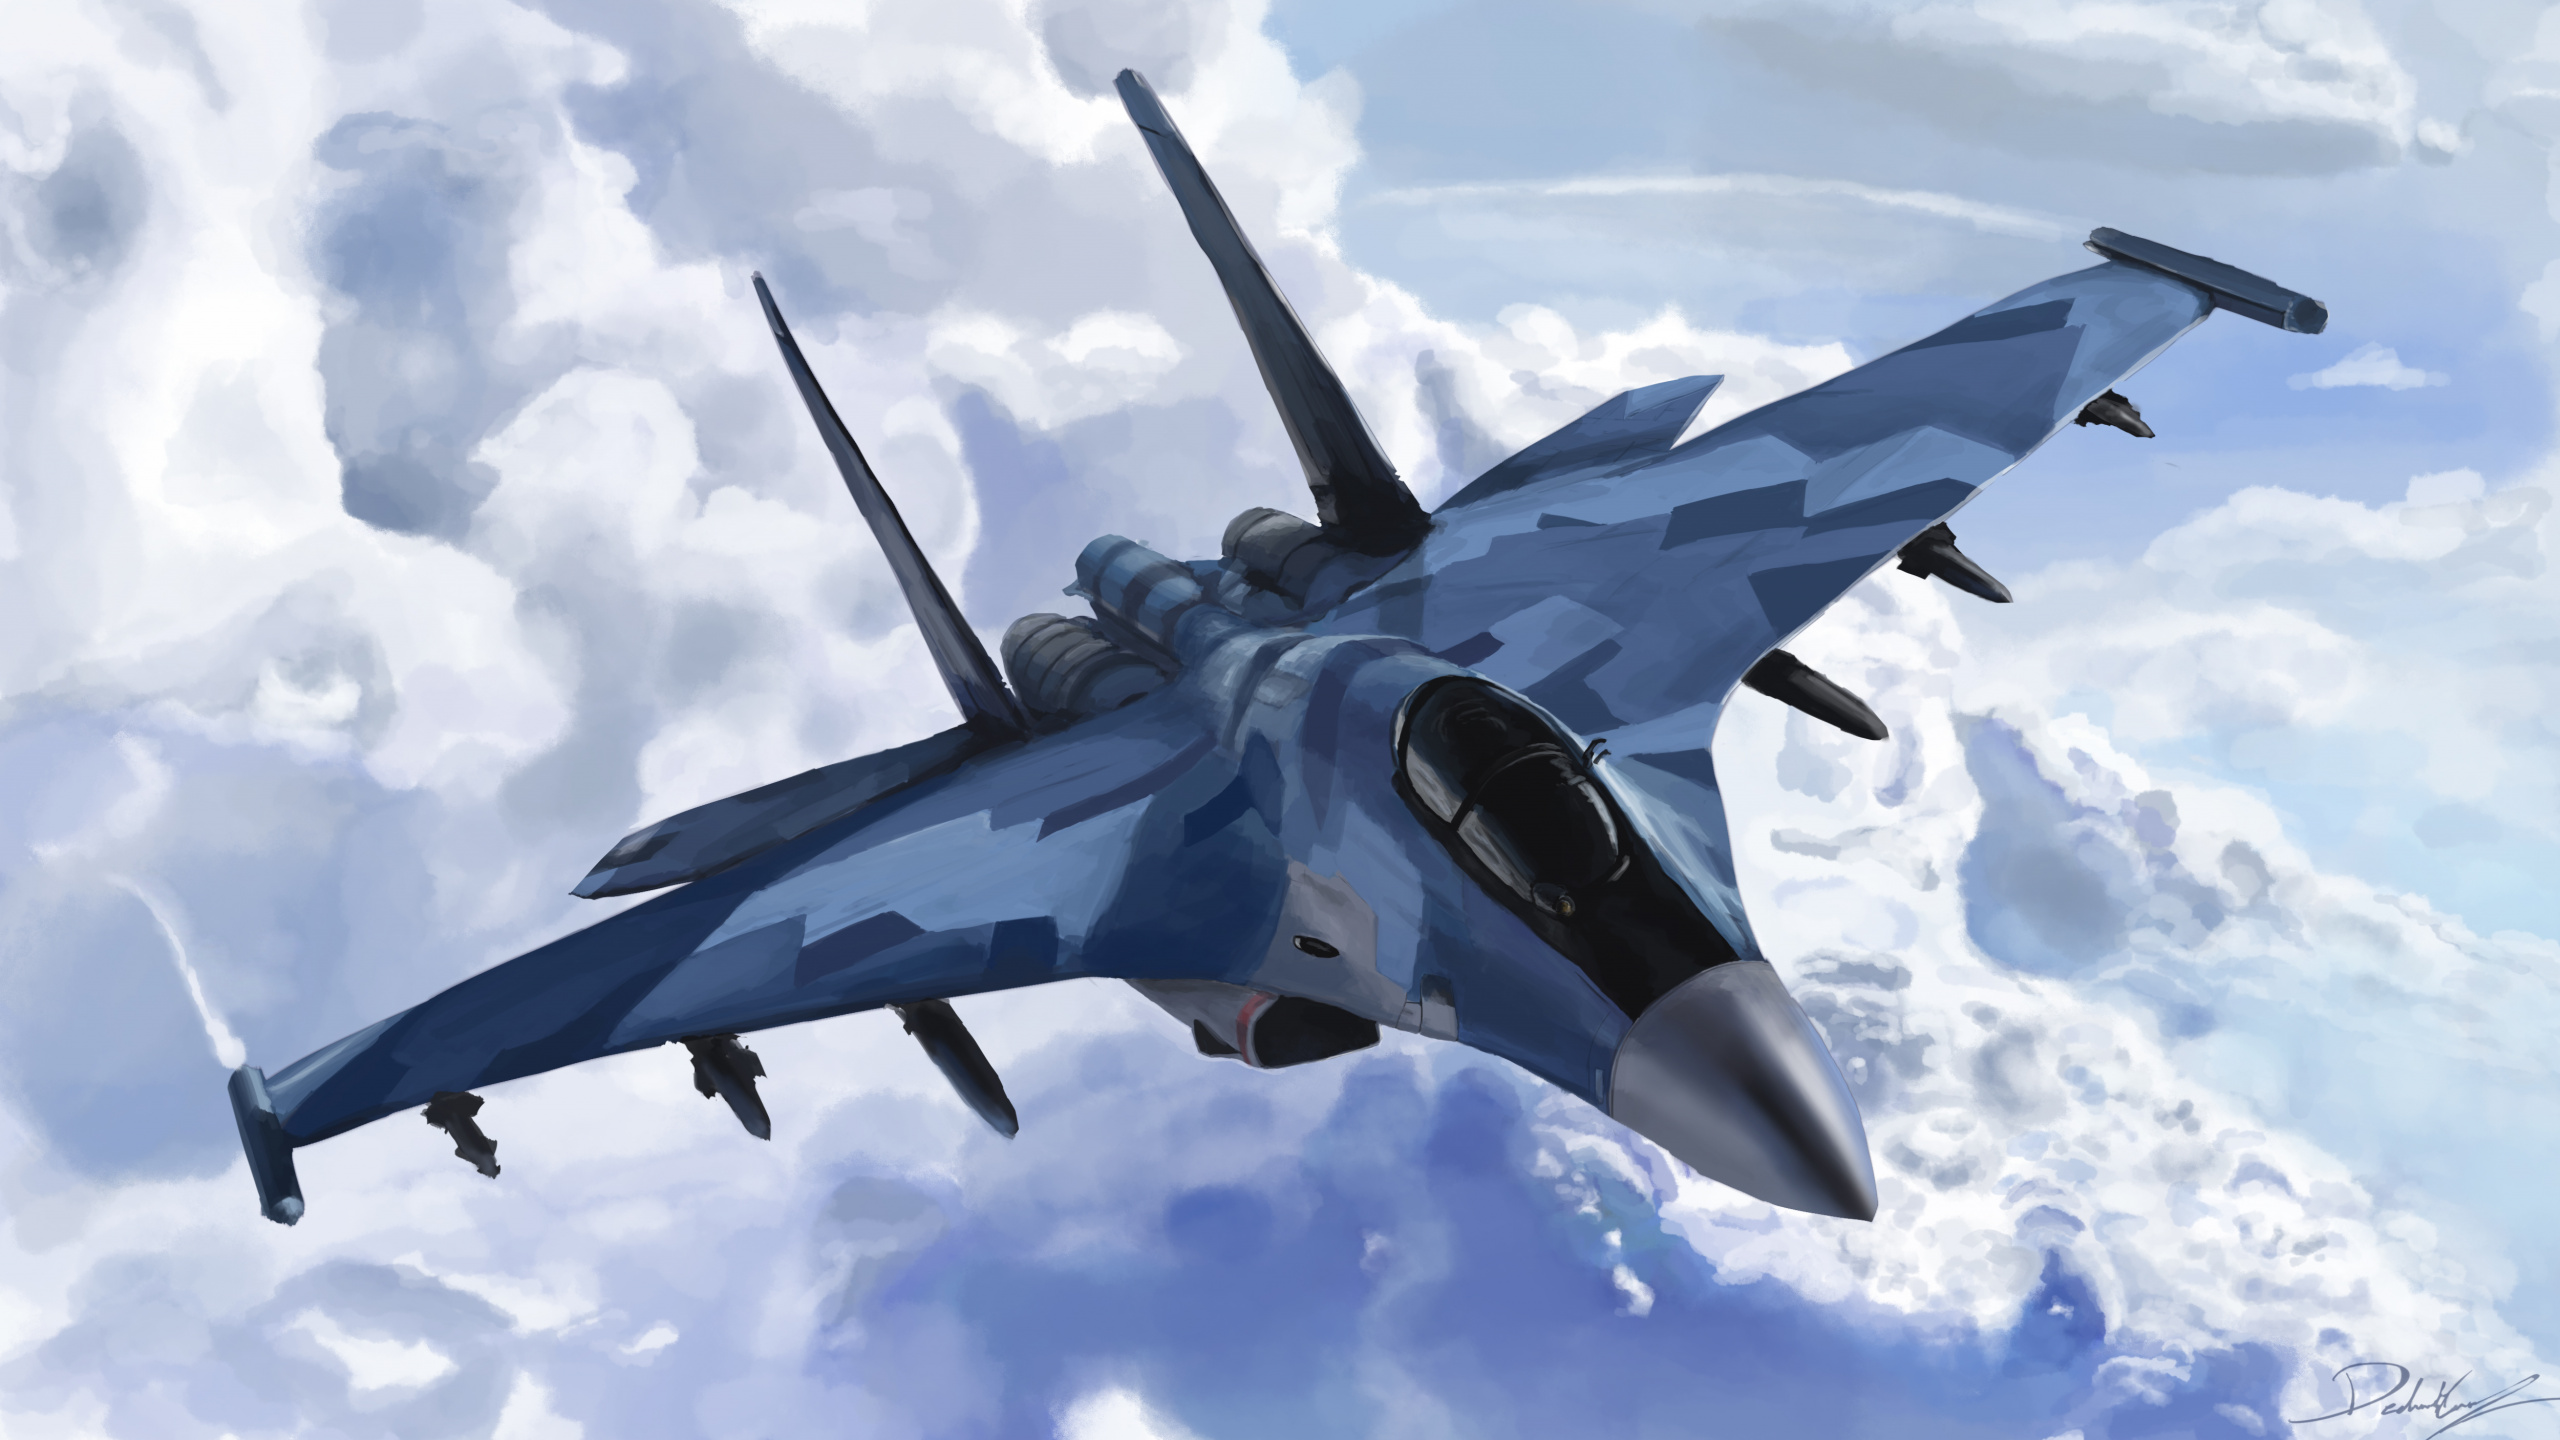 喷气式飞机, 军用飞机, 空军, 苏35, 洛克希德*马丁公司的f35闪电ii 壁纸 2560x1440 允许